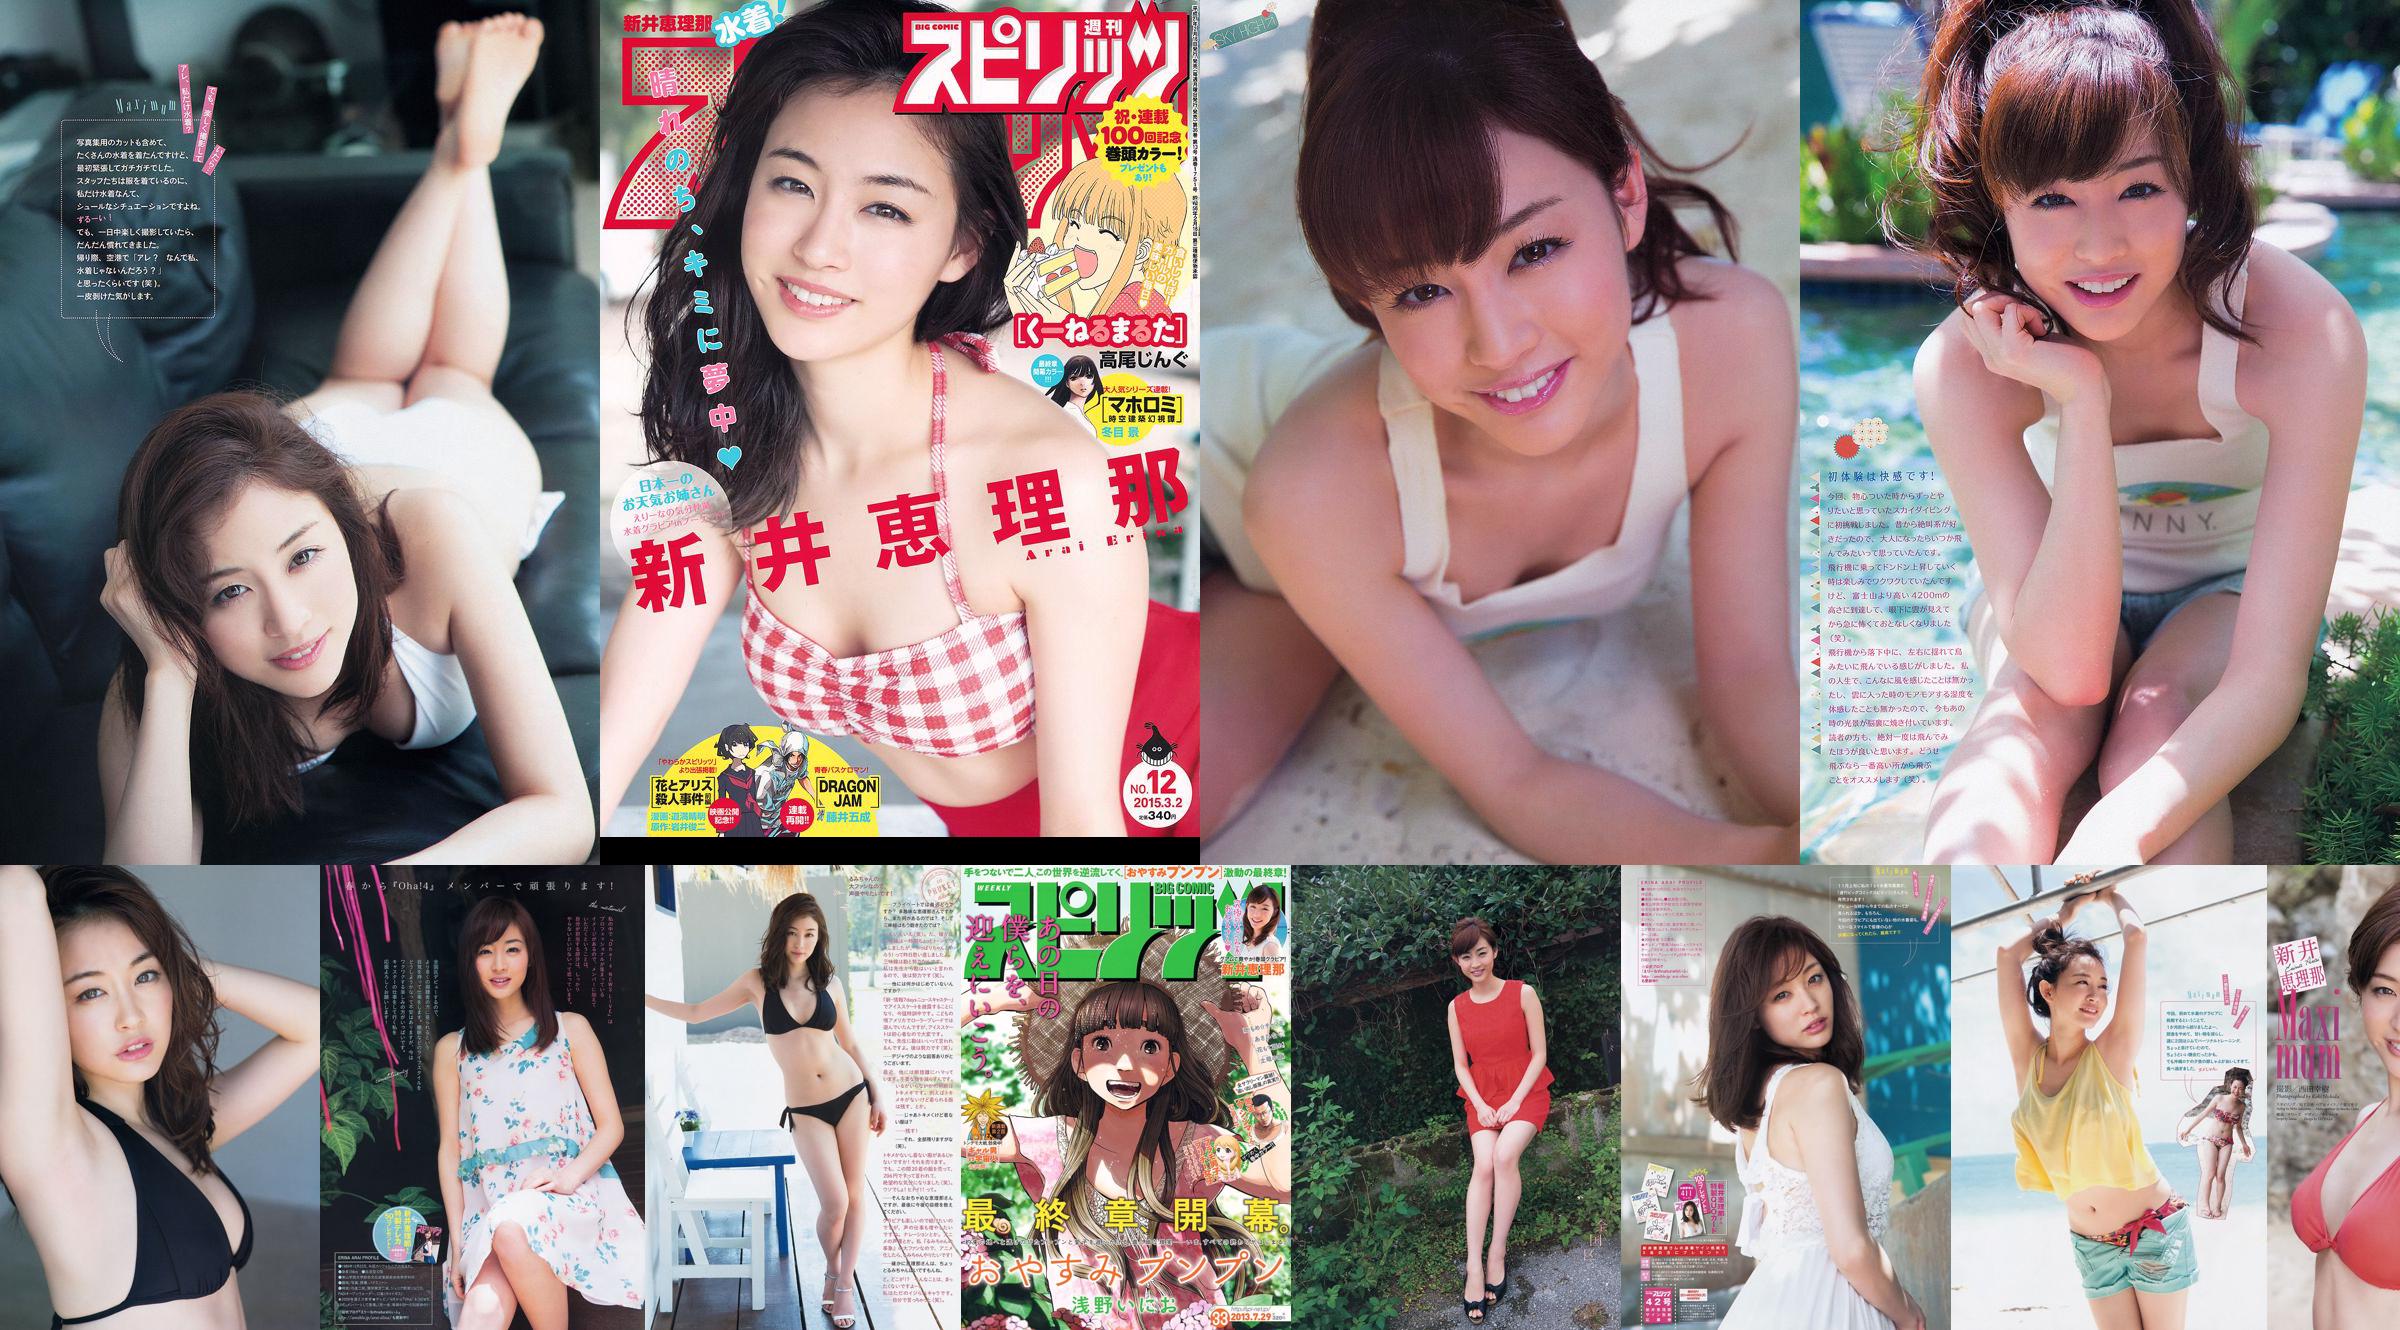 Haruka Shimazaki Yui Yokoyama Moeno Nito Ayame Misaki Chinami Suzuki Nami Iwasaki [Weekly Playboy] 2012 No.51 Photo Mori No.28ca9e Page 1